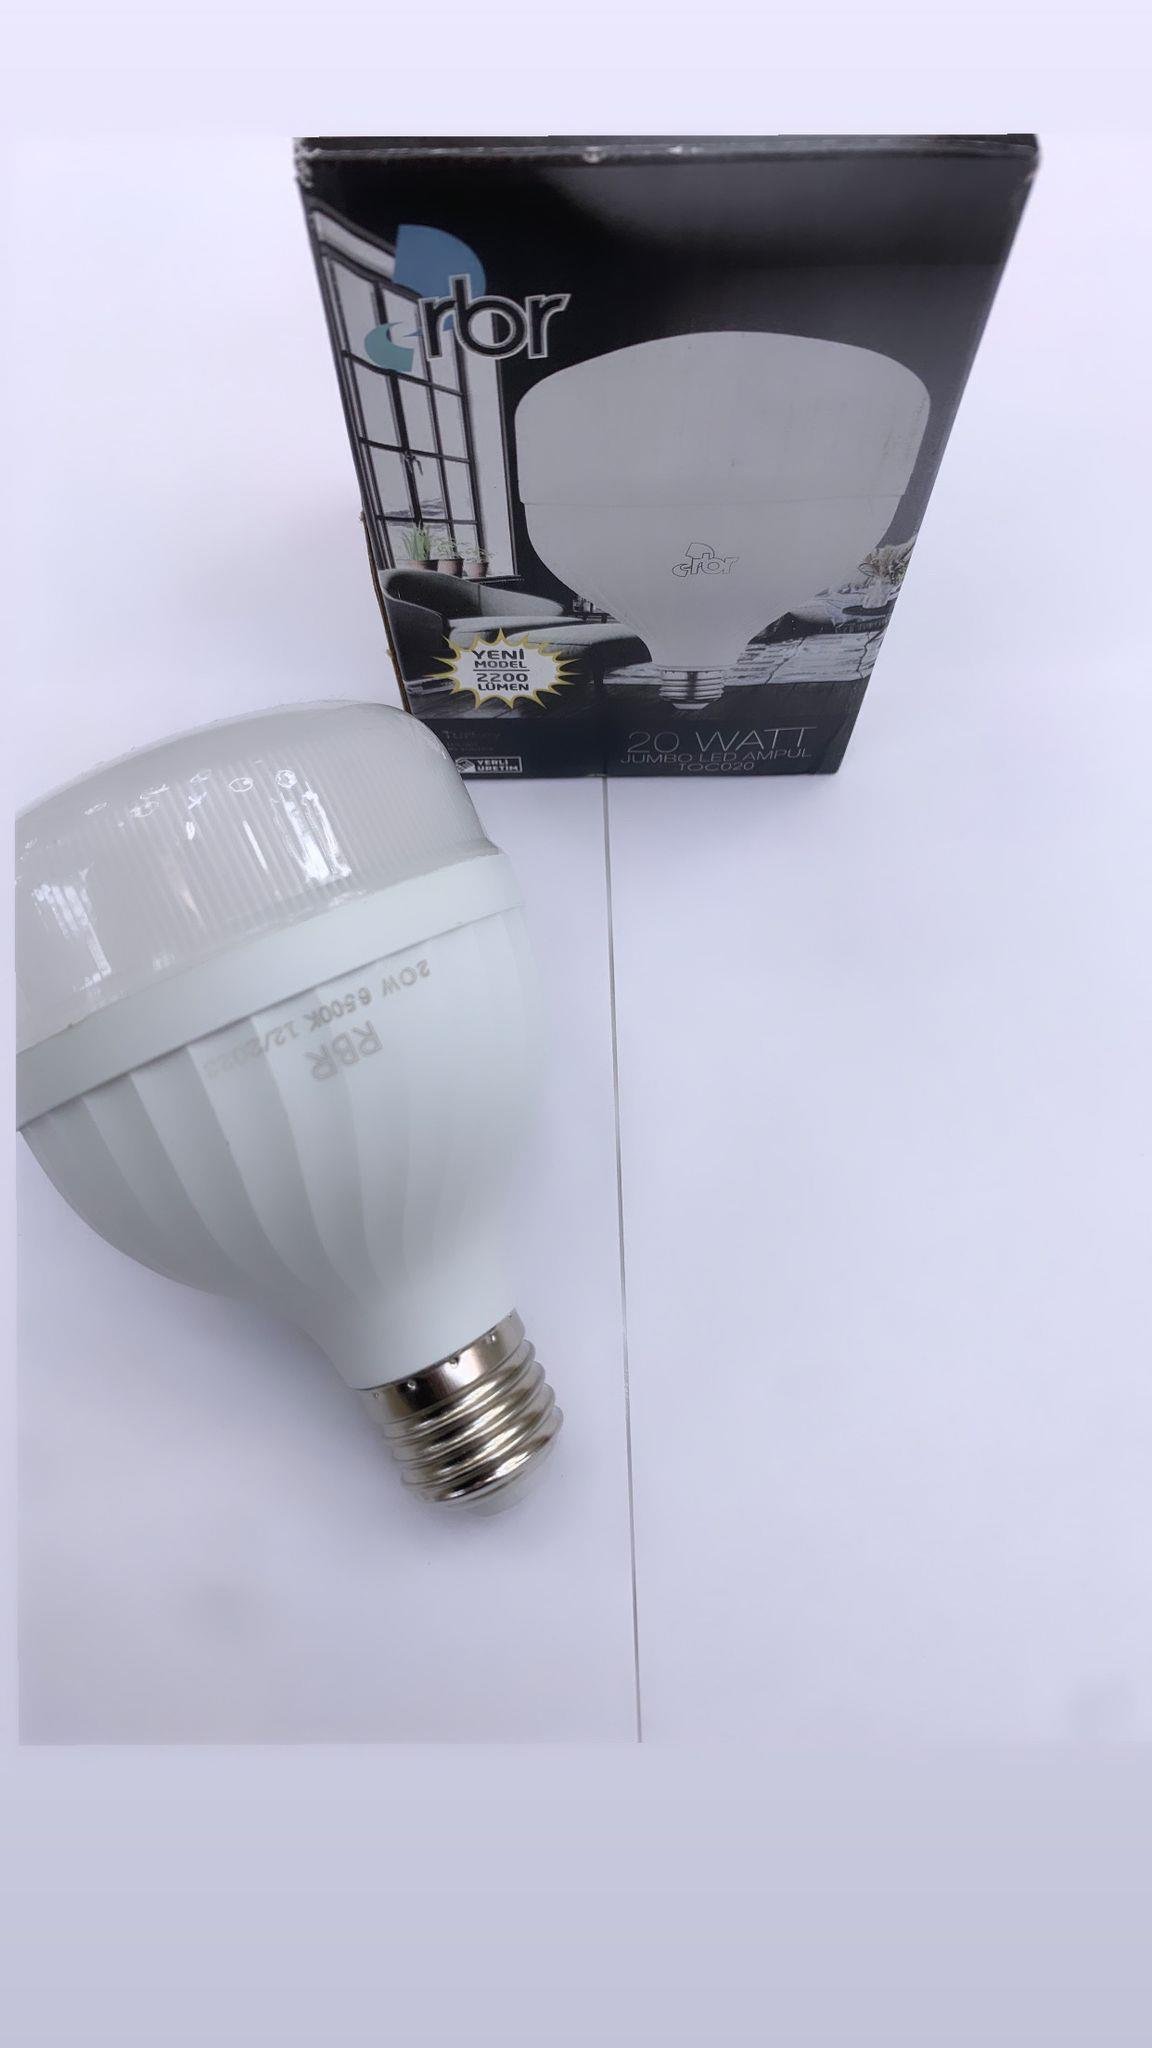 En uygun Fiyata Rbr 20W Torch Ampül Beyaz Işık - Çimen Elektrik